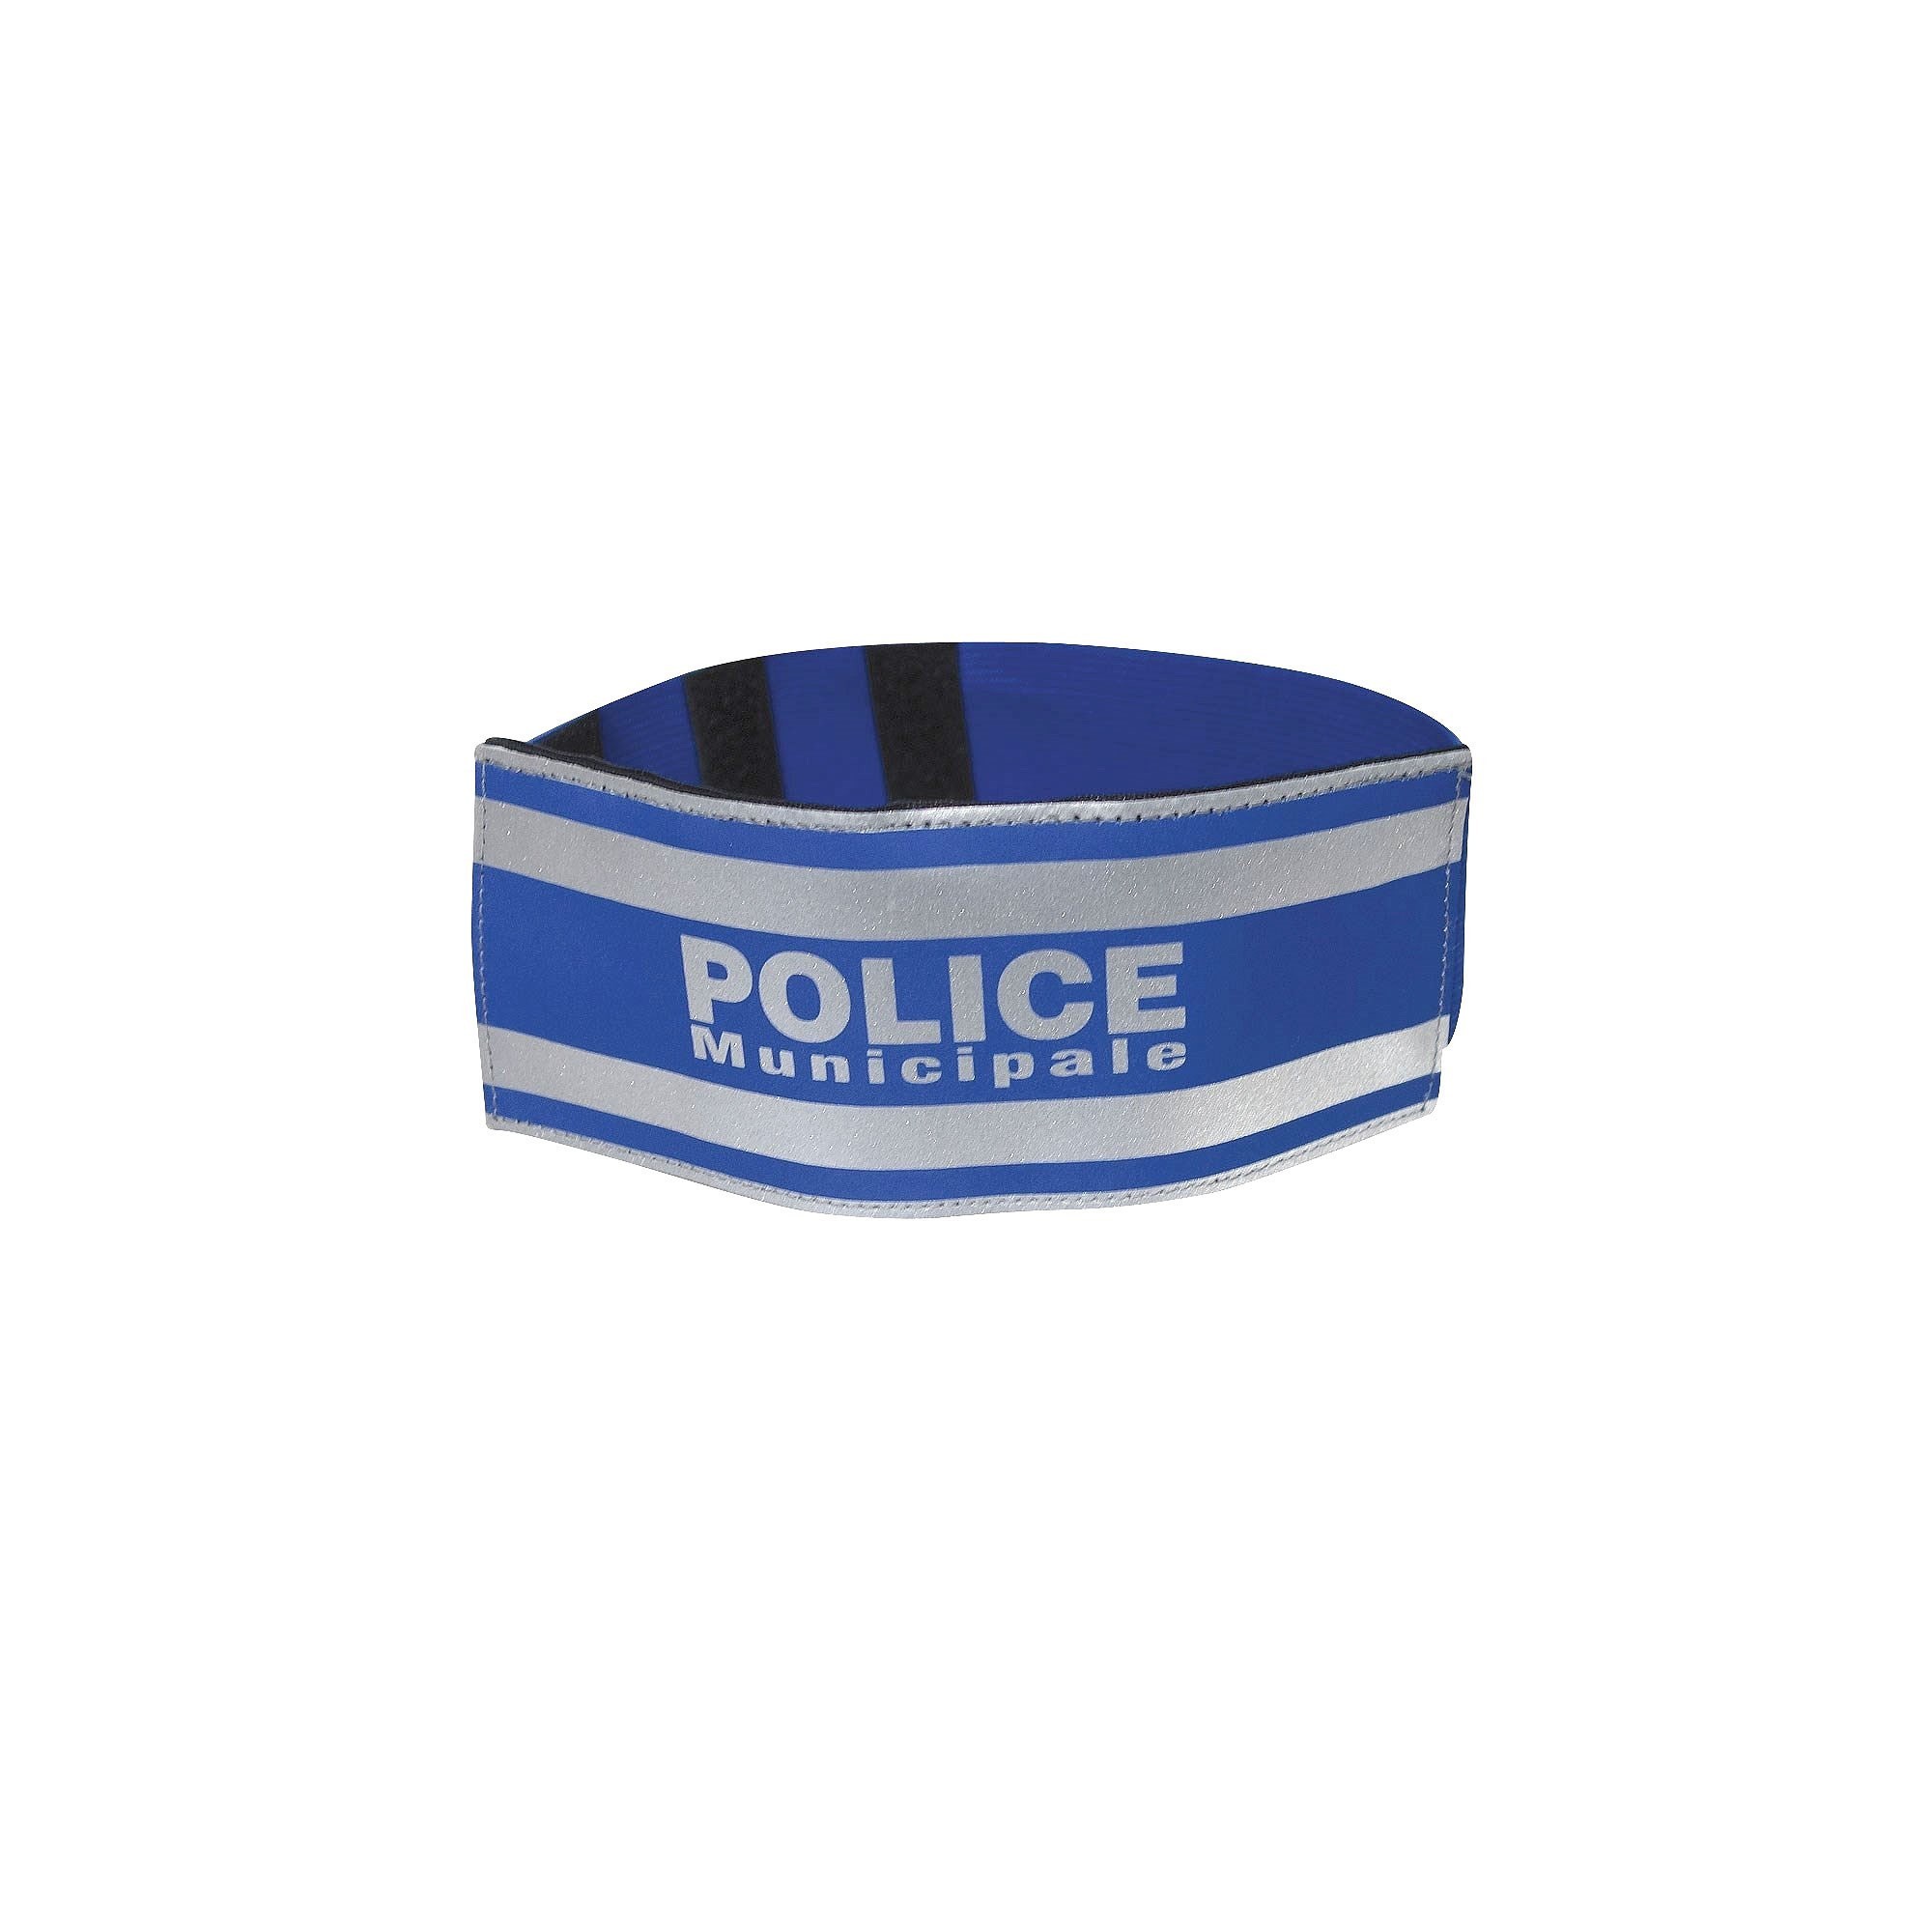 Brassard Police Municipale bleu texte et bandes rétroréfléchissants